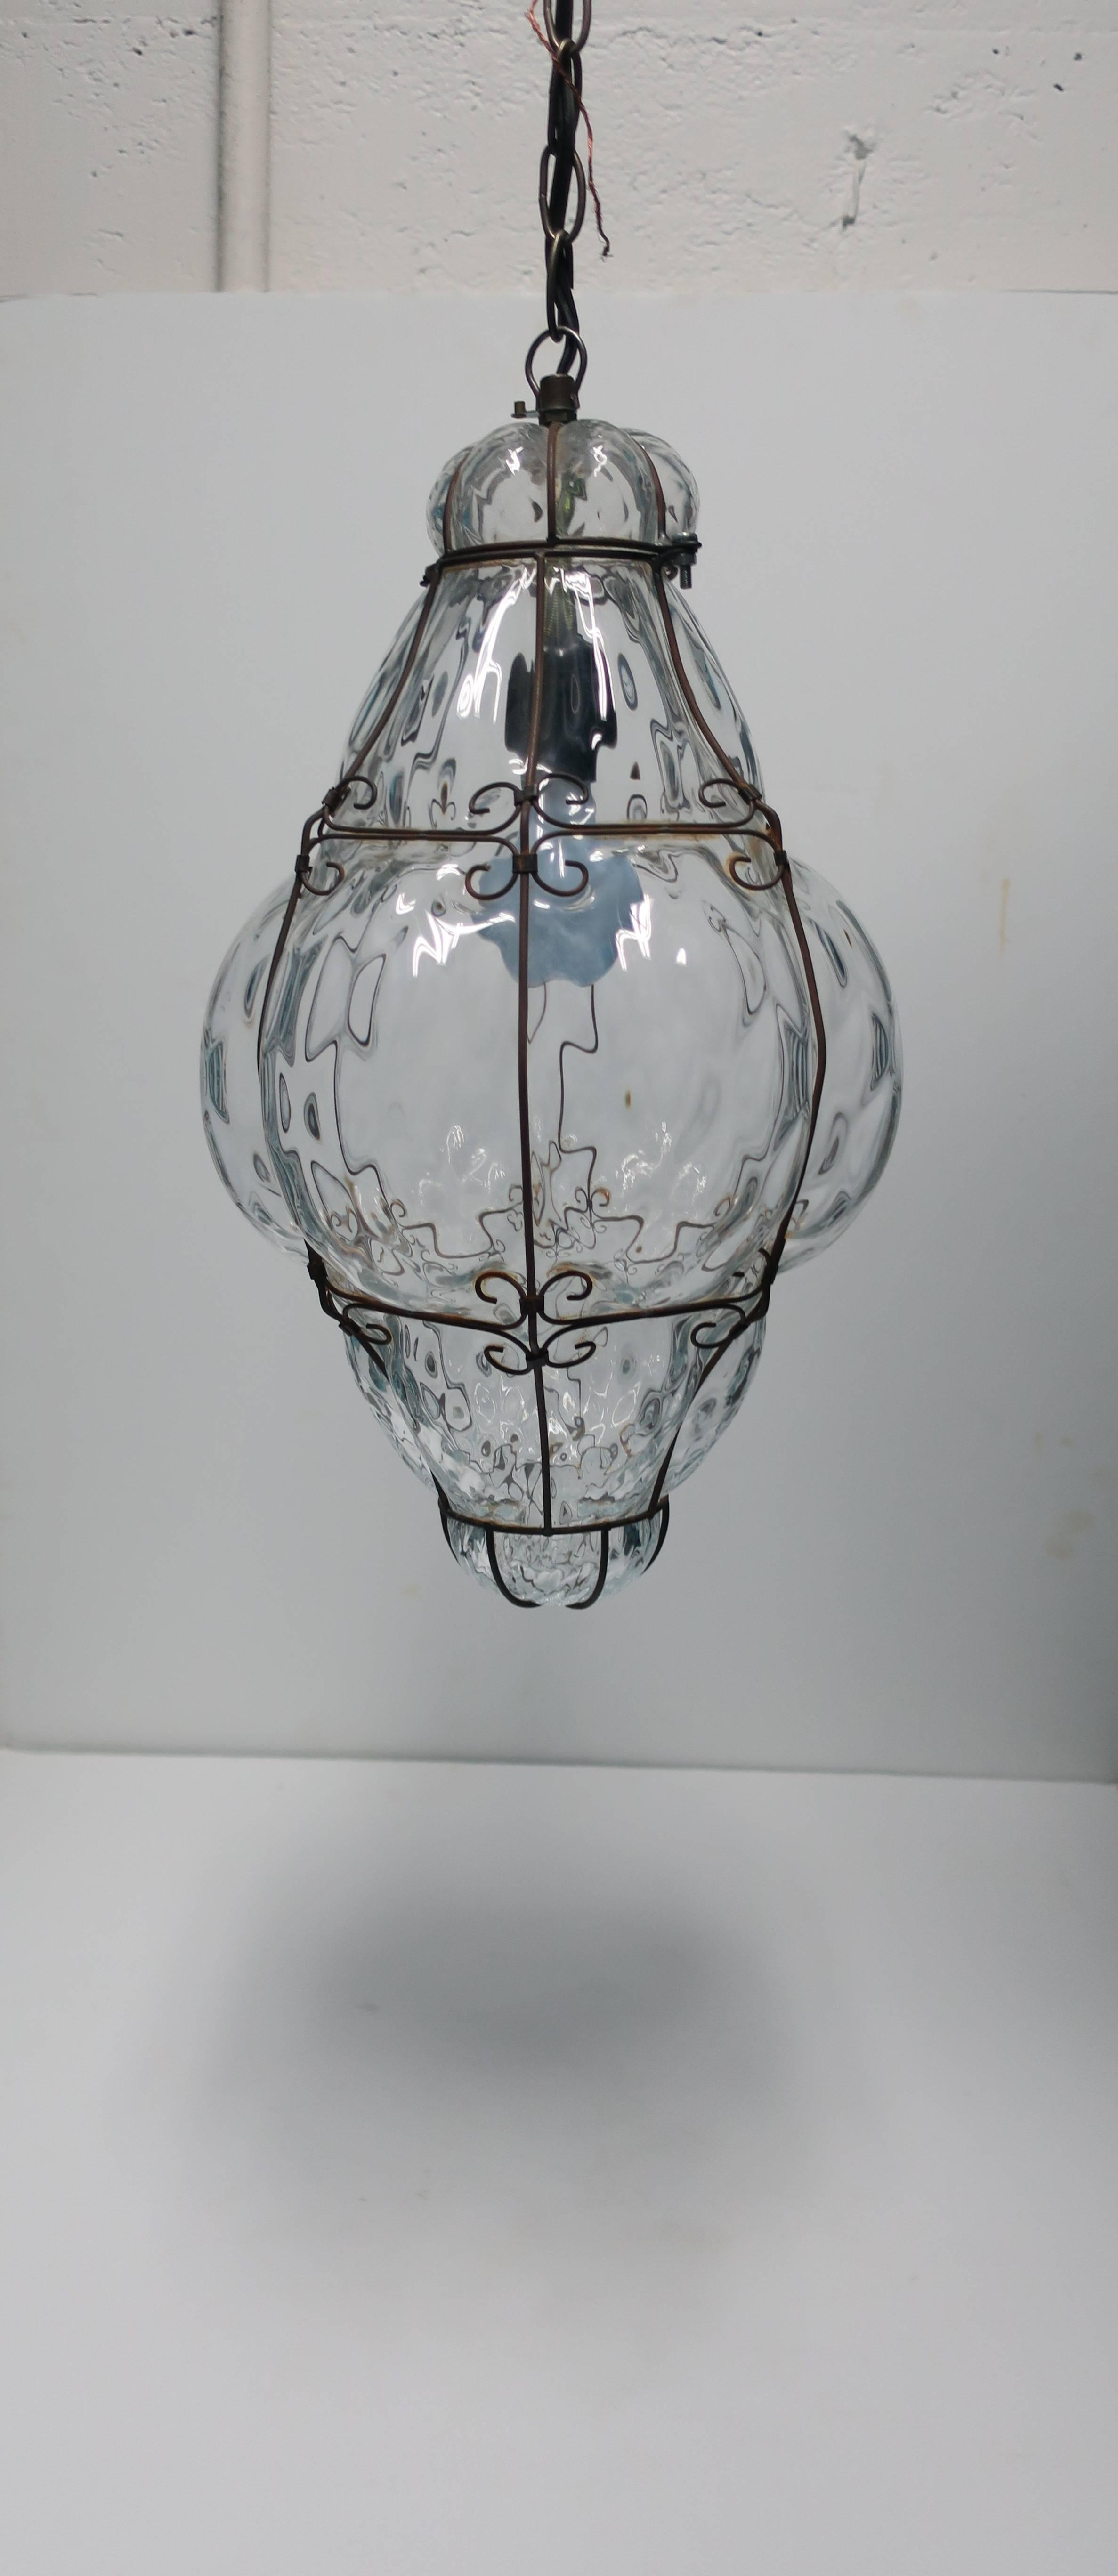 Relativ große, klare, italienische Laterne mit einer Lampe/Glühbirne, mundgeblasenes Glas, umrahmt von dekorativem Metall, Italien, ca. 1950er Jahre, Italien. Funktioniert einwandfrei. 

Die Abmessungen umfassen: 19,5